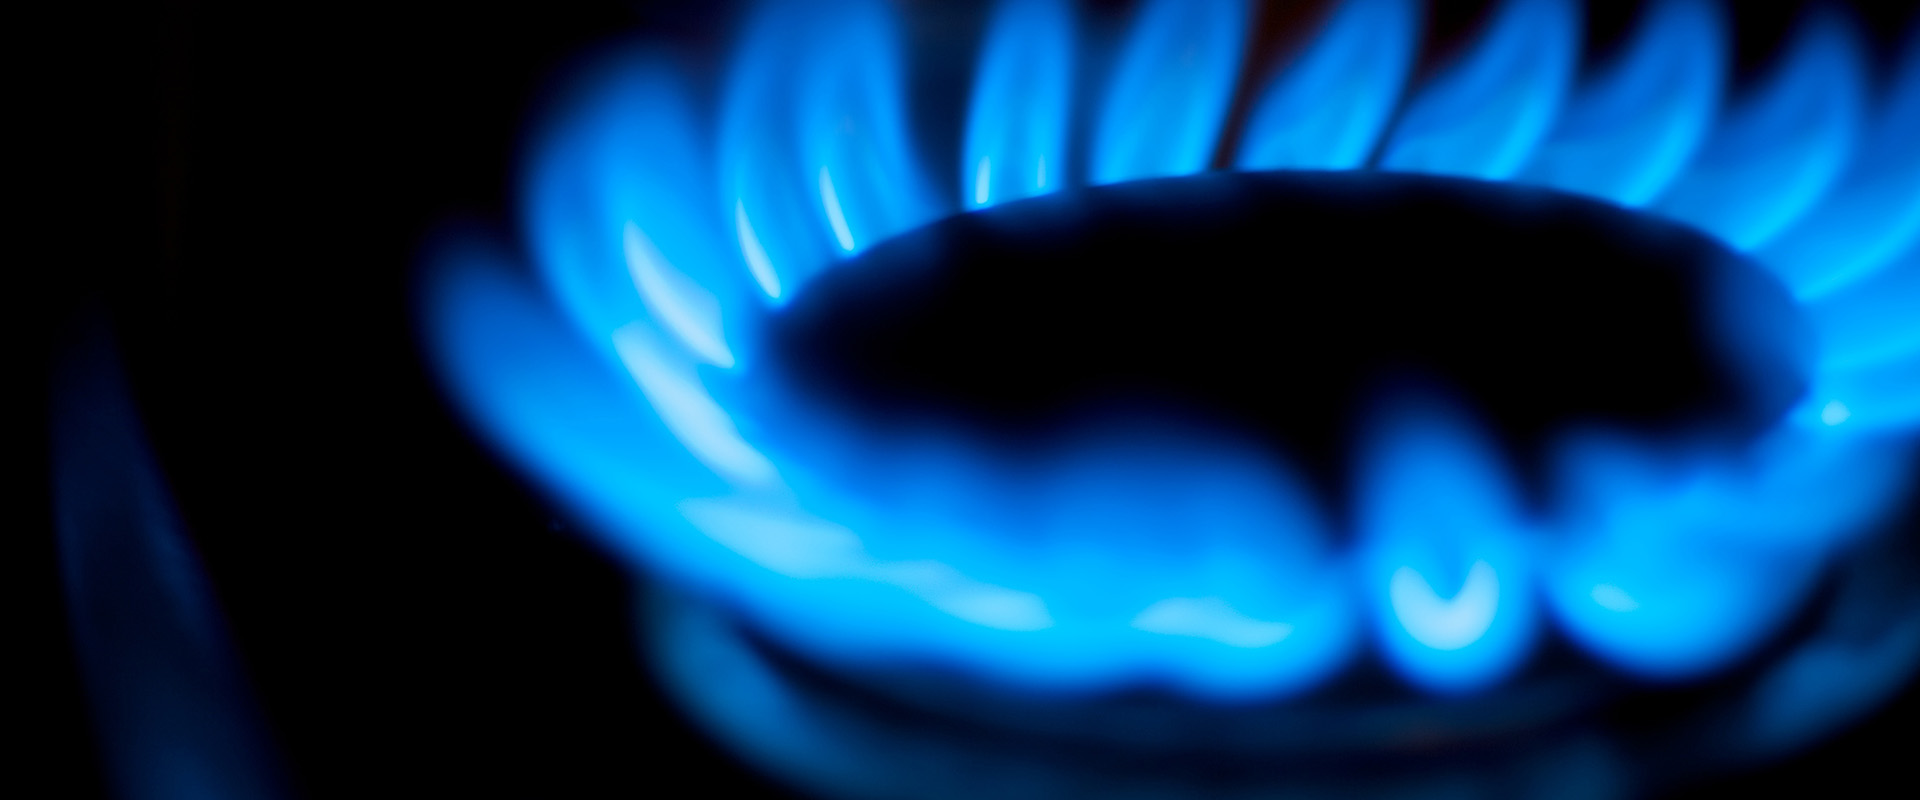 Différences entre gaz naturel et gaz propane